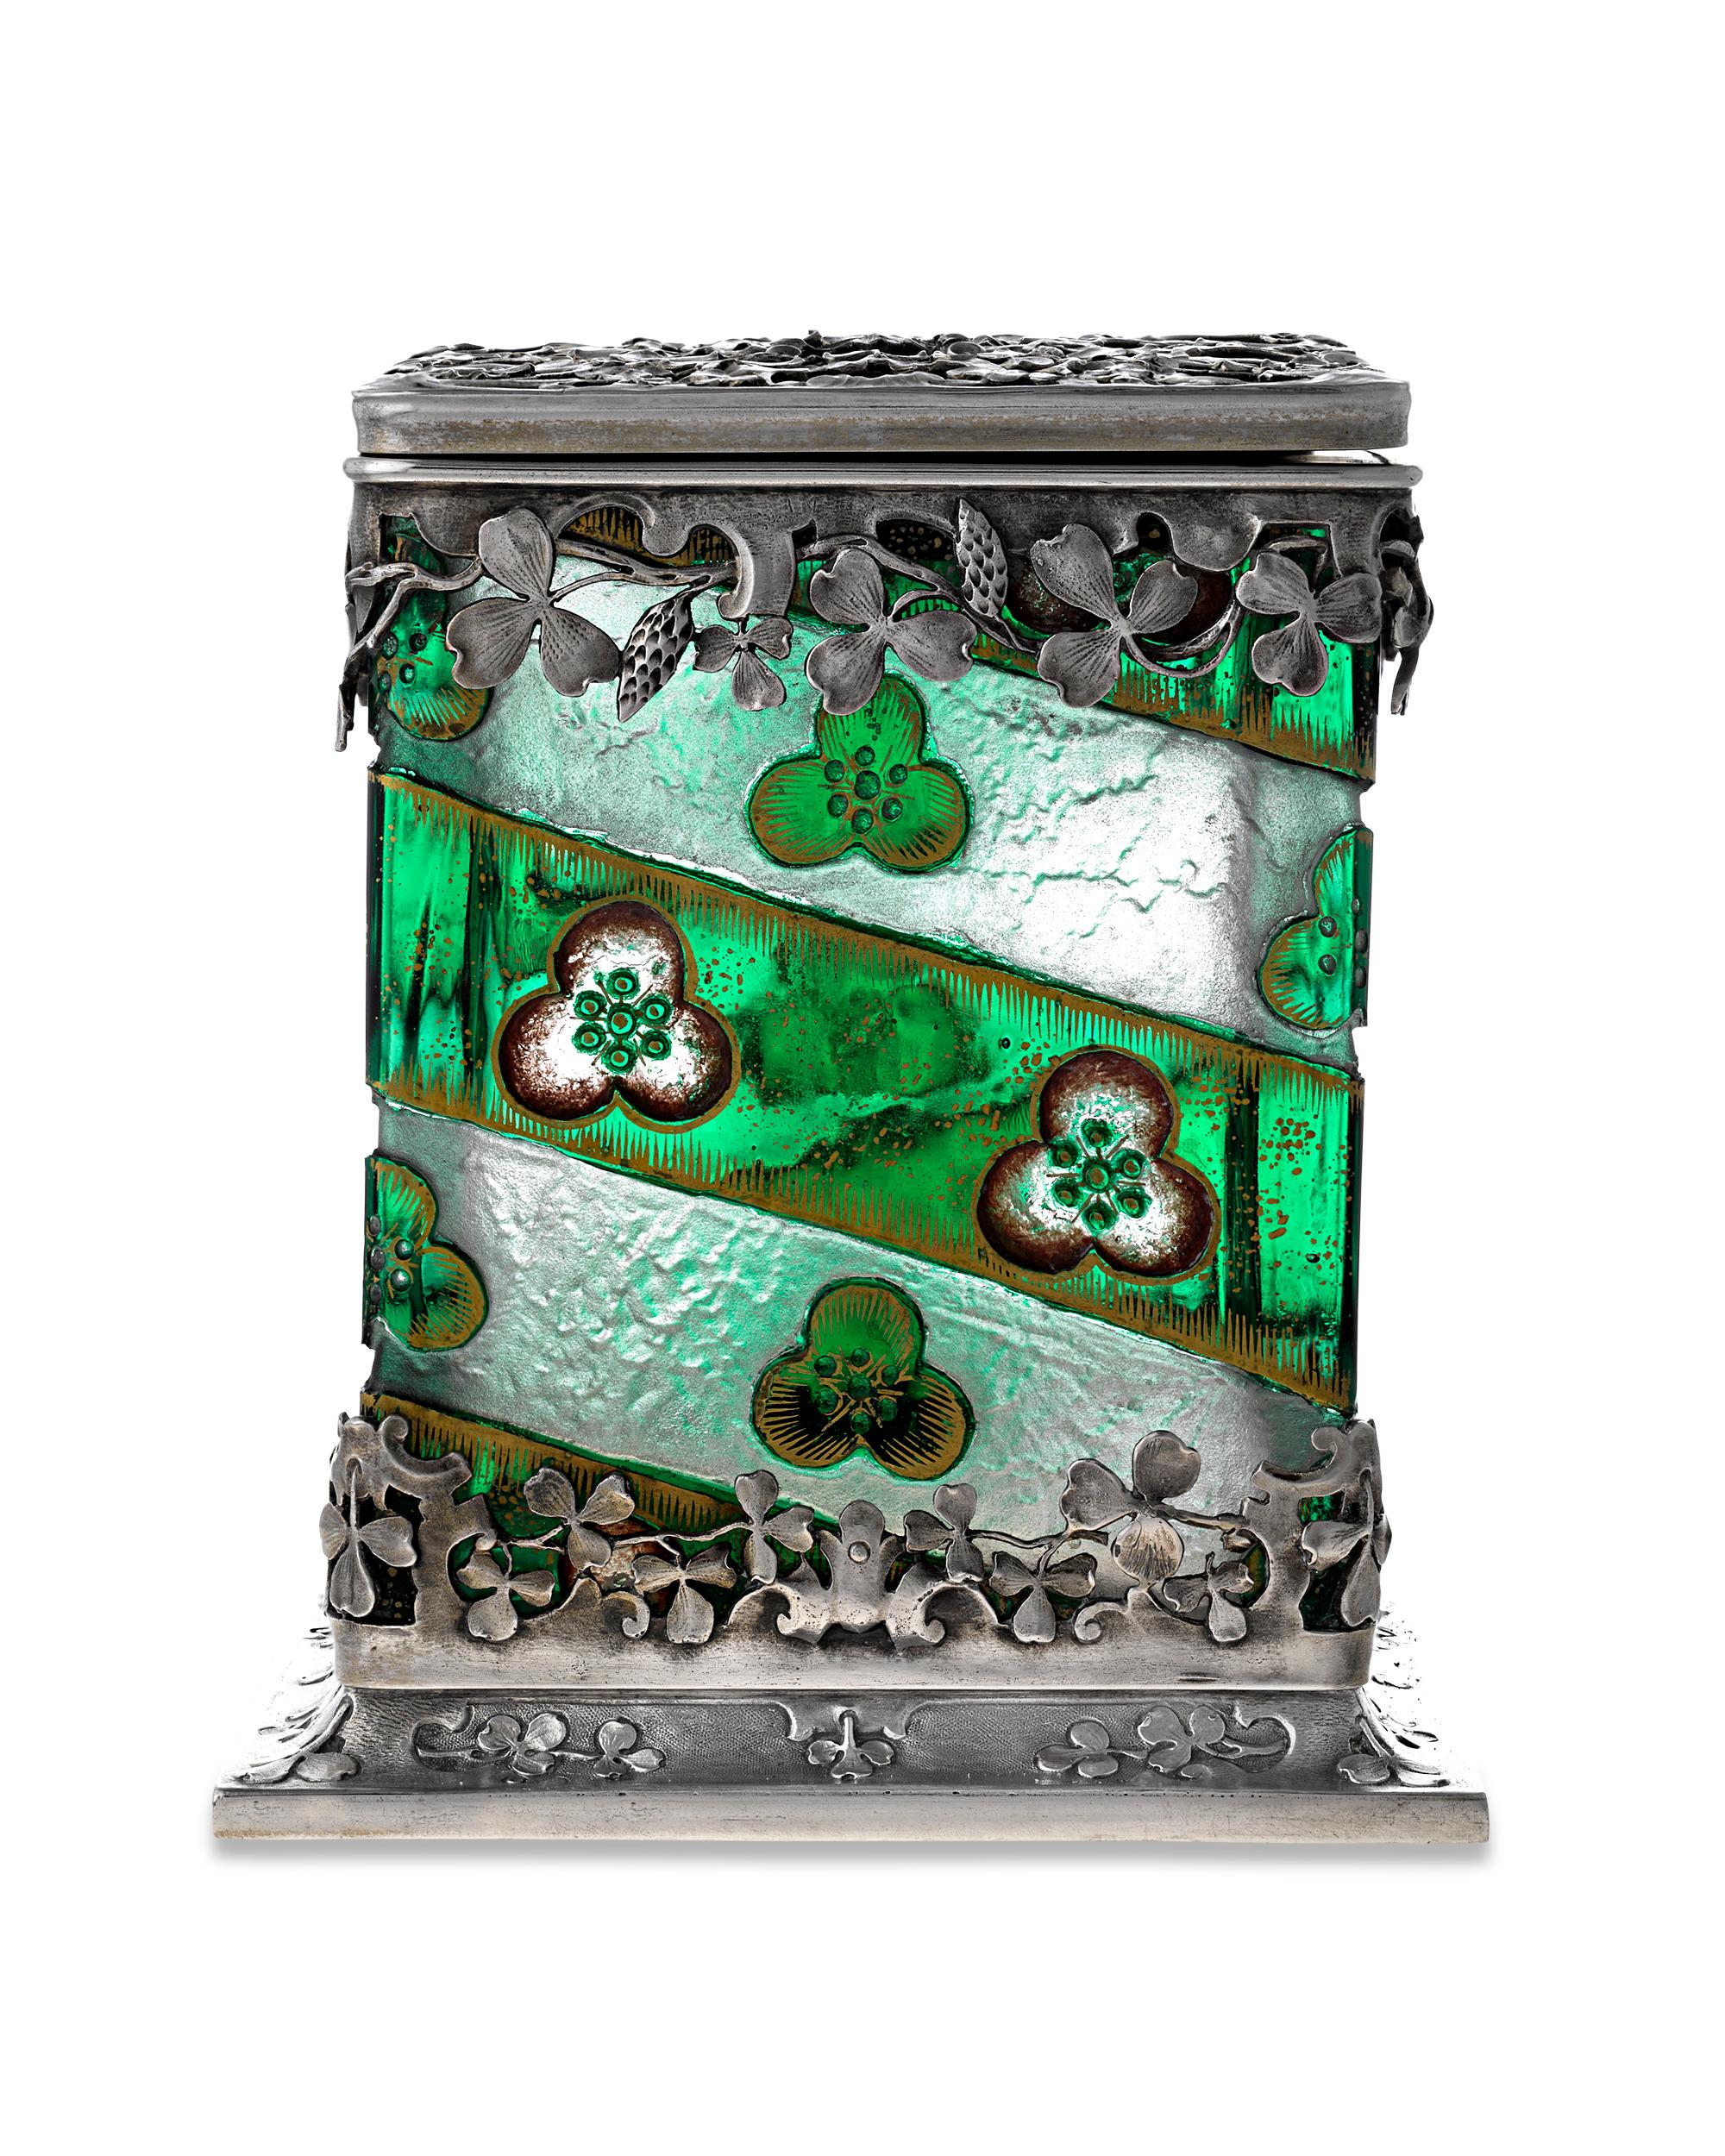 Ce ravissant coffret en verre vert et argent de la célèbre société française de verrerie d'art Daum évoque la luxuriance verdoyante d'un jardin d'été. Des trèfles et des vignes en argent finement détaillés entourent le verre vert riche de cette